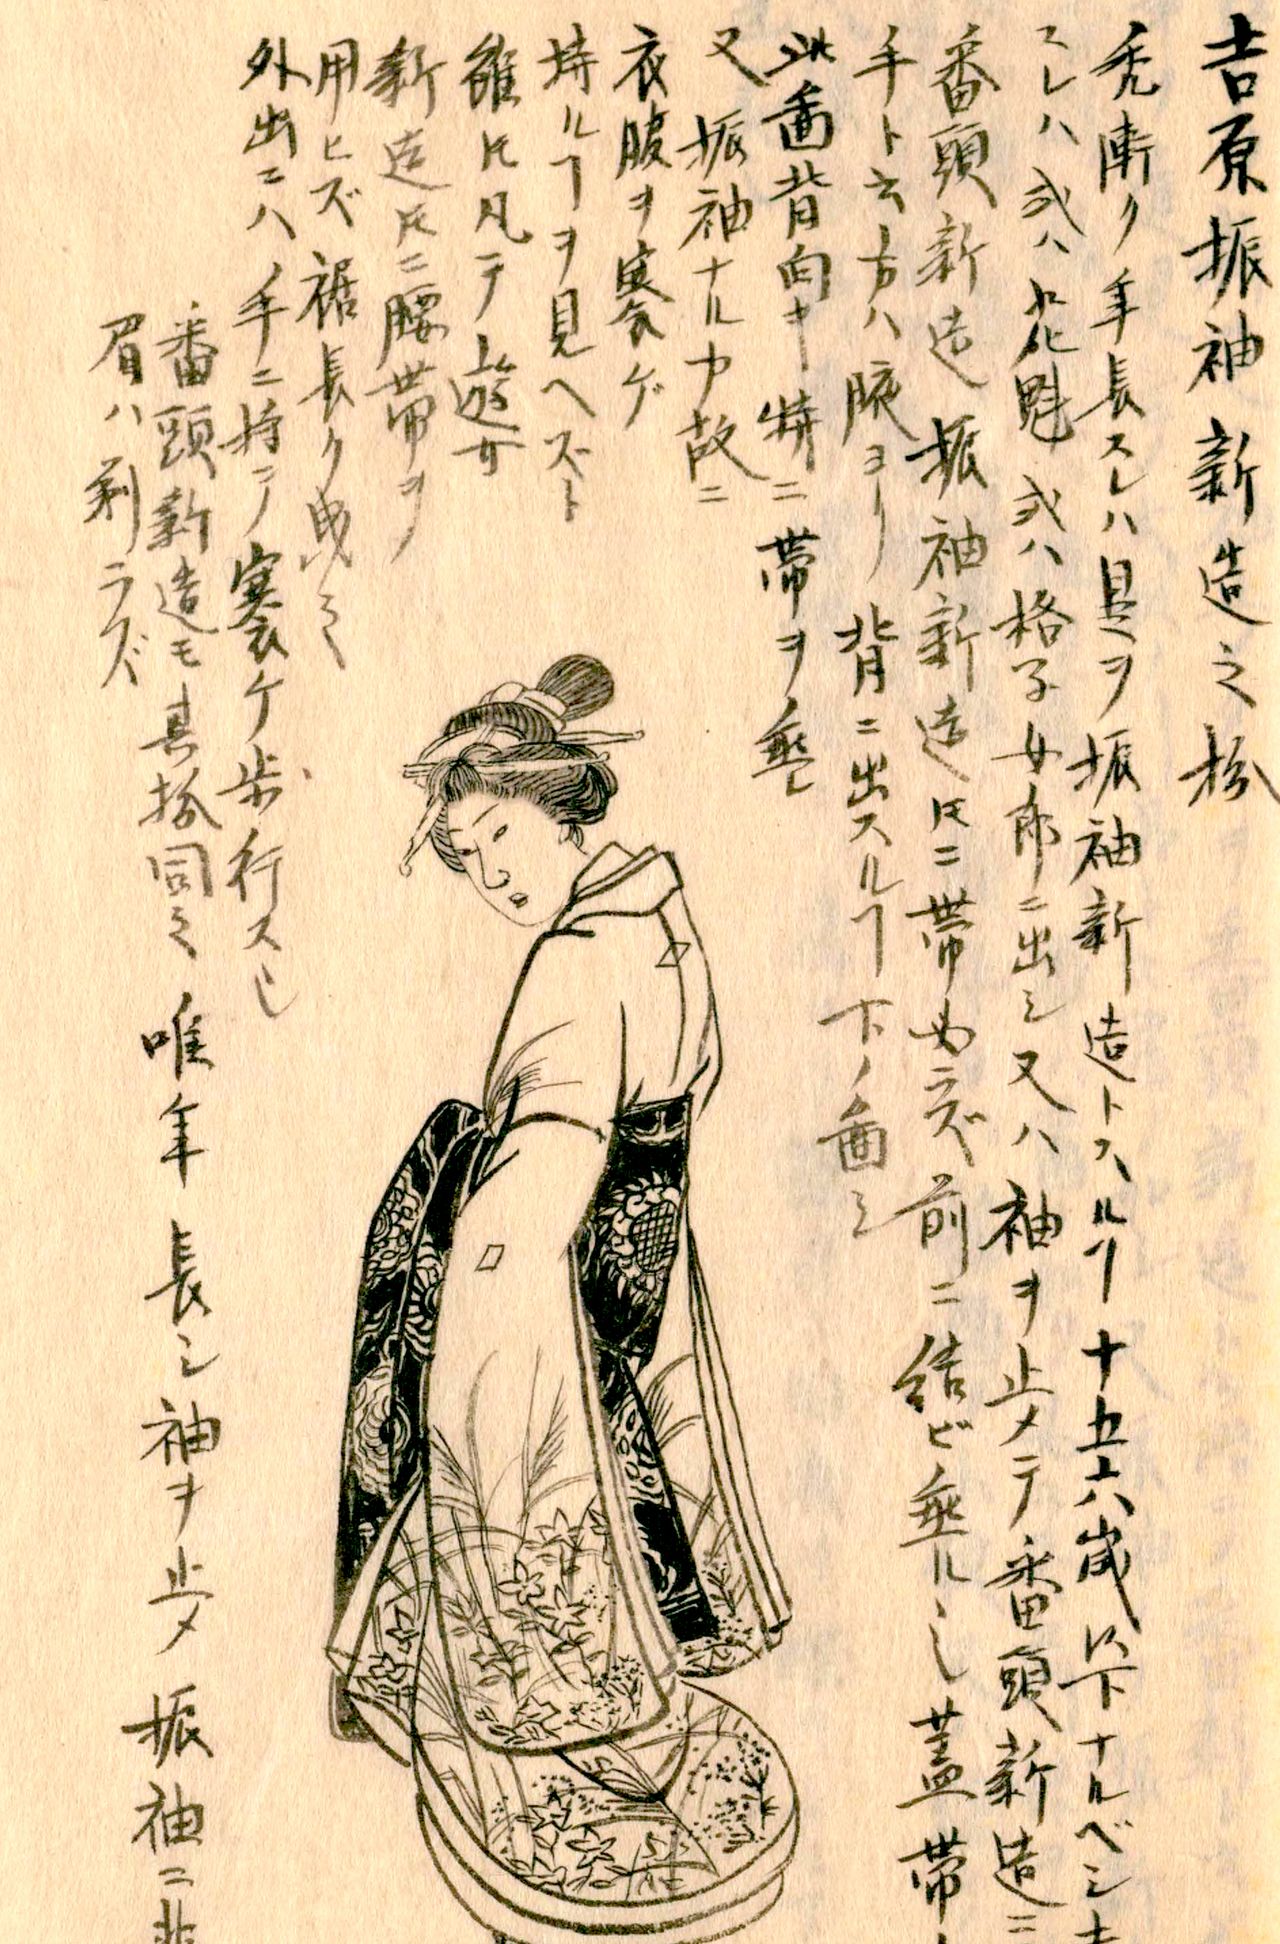 شينزو في يوشيوارا. الصورة من ’’اسكتشات موريسادا‘‘ (الصورة بإذن من مكتبة البرلمان القومية).